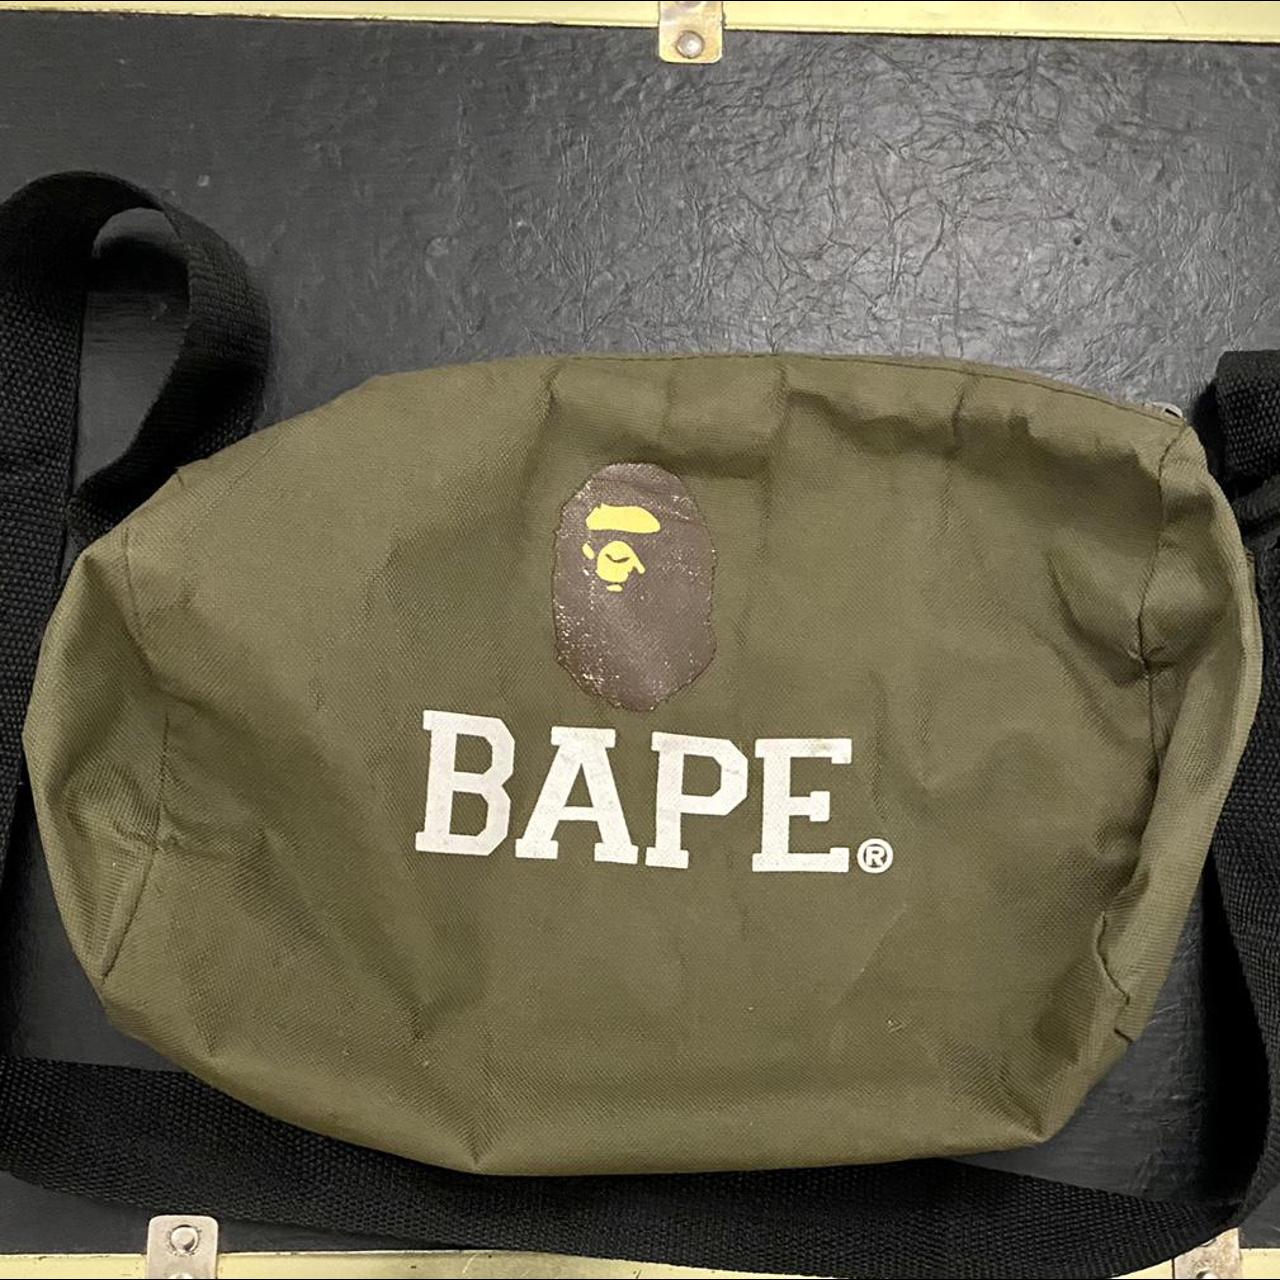 Bape, Bags, Bape Shoulder Bag